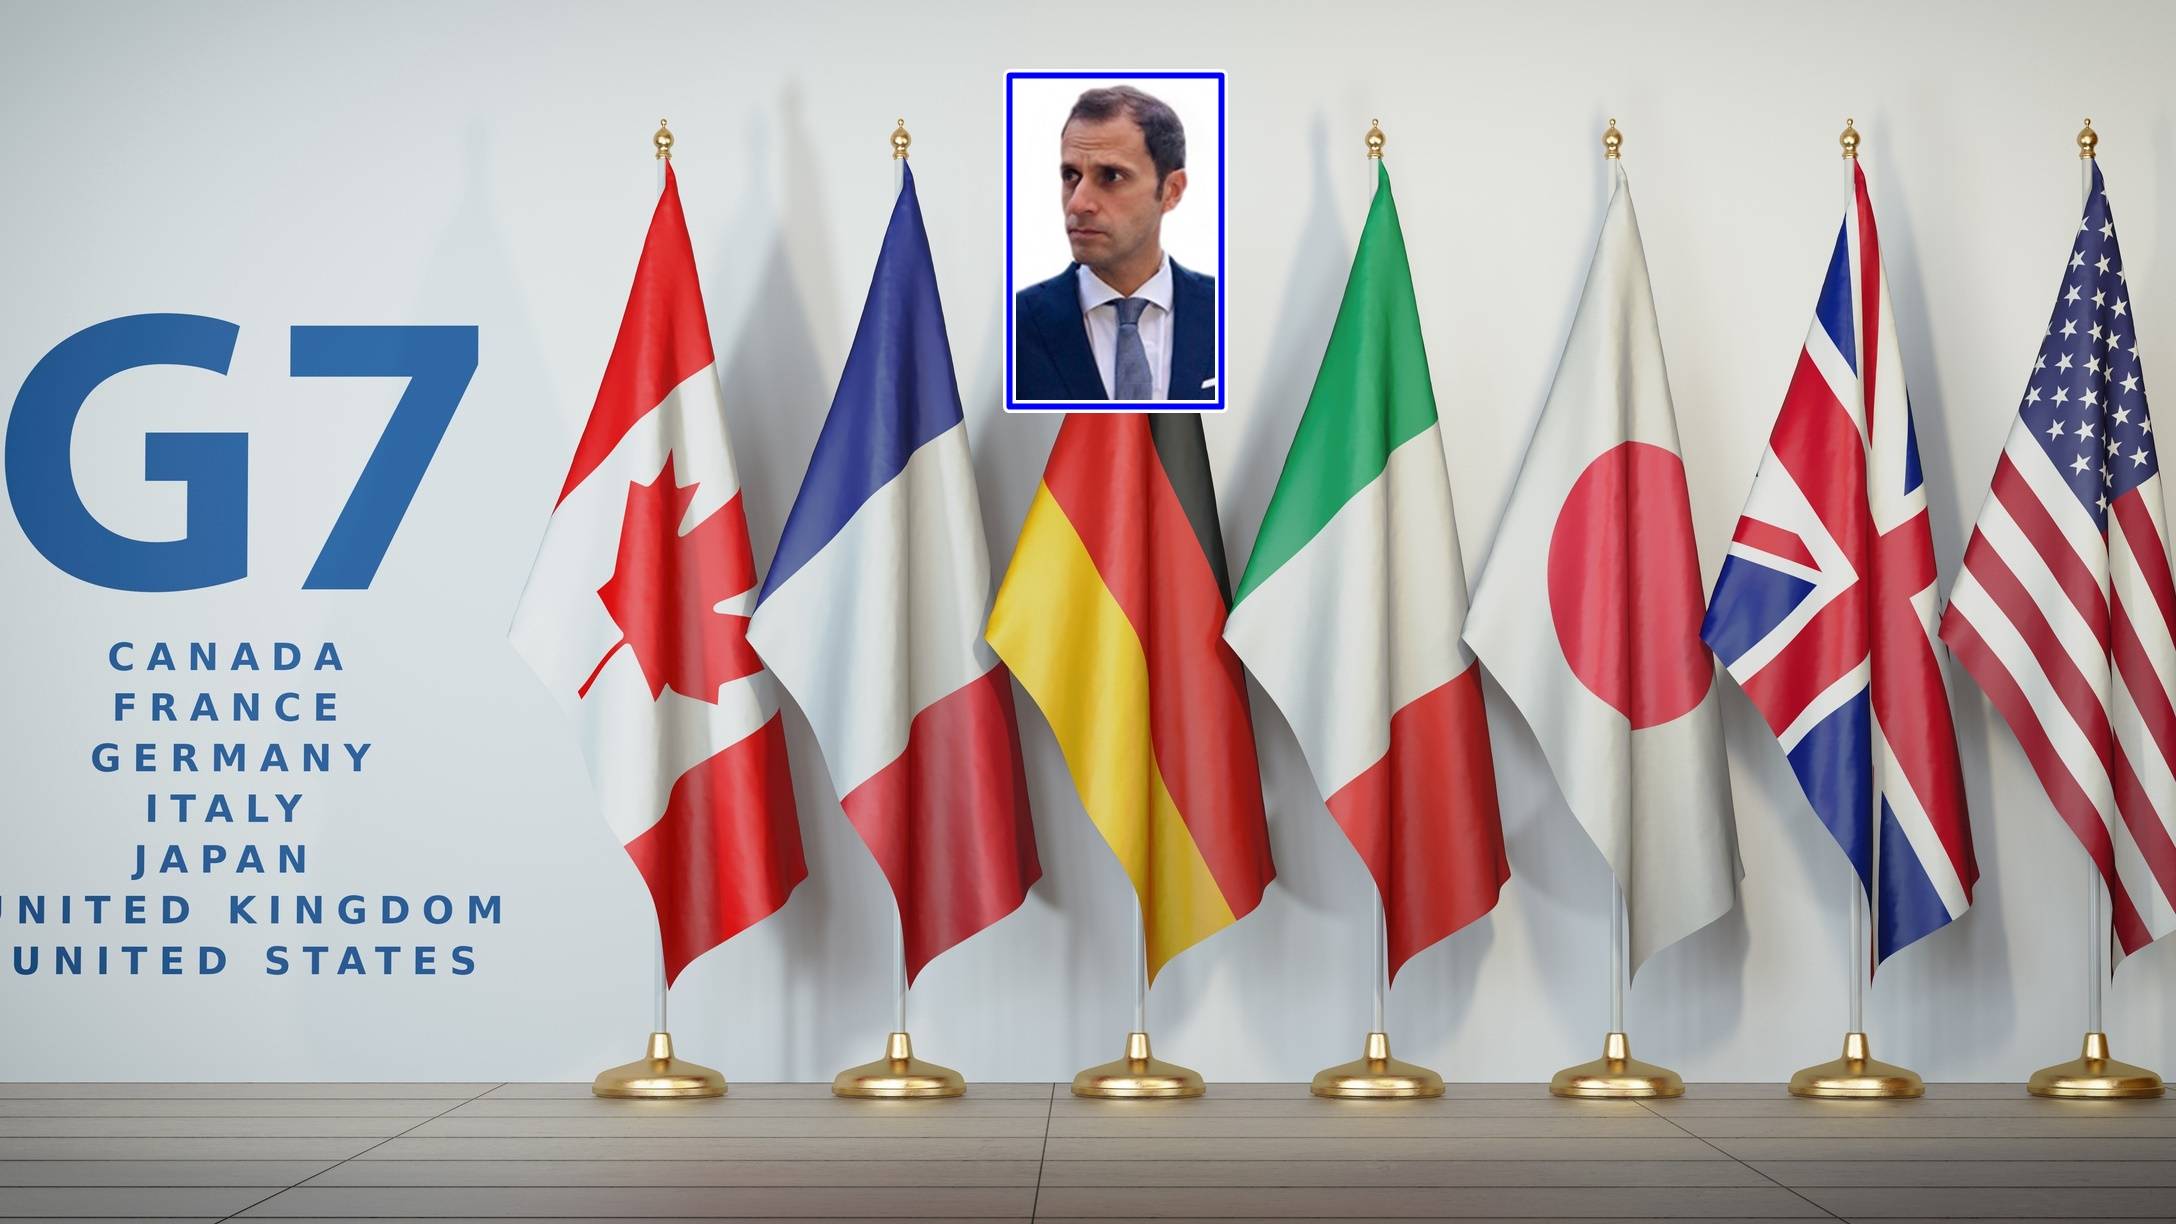 L’Italia al G7 in Cornovaglia: le opportunità e i temi da trattare